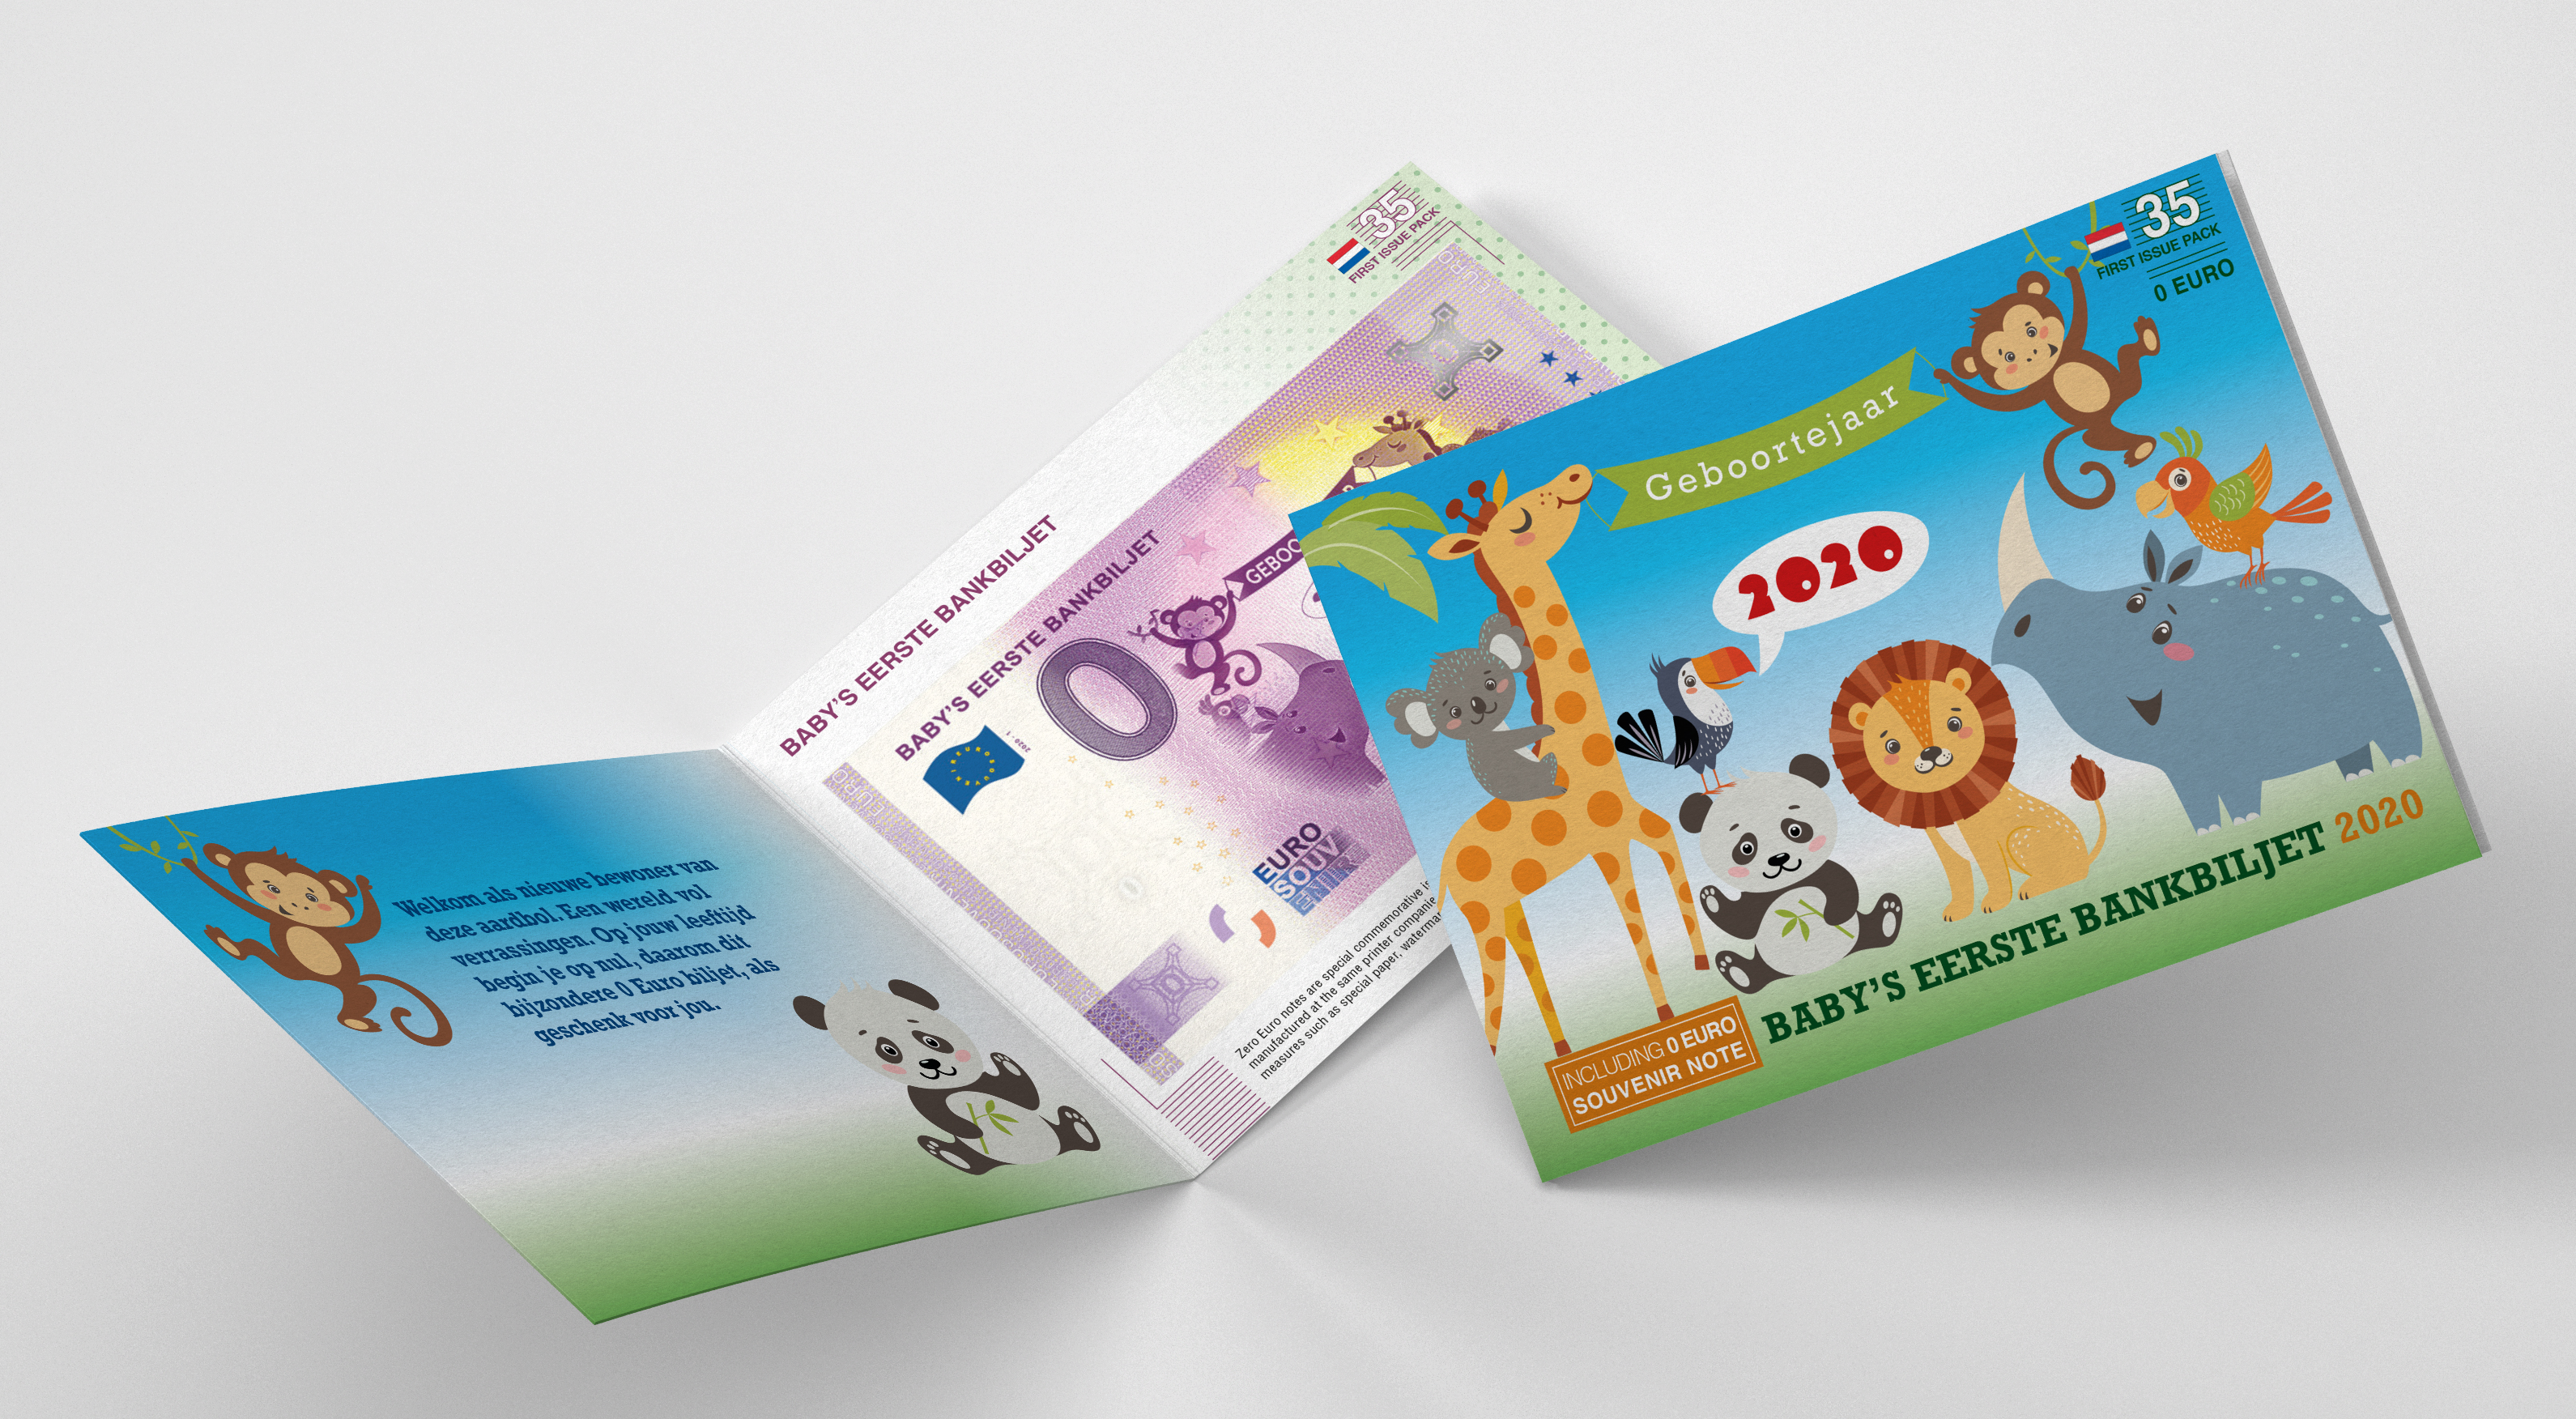 0 Euro biljet Nederland 2020 - Baby's eerste bankbiljet LIMITED EDITION FIP#35